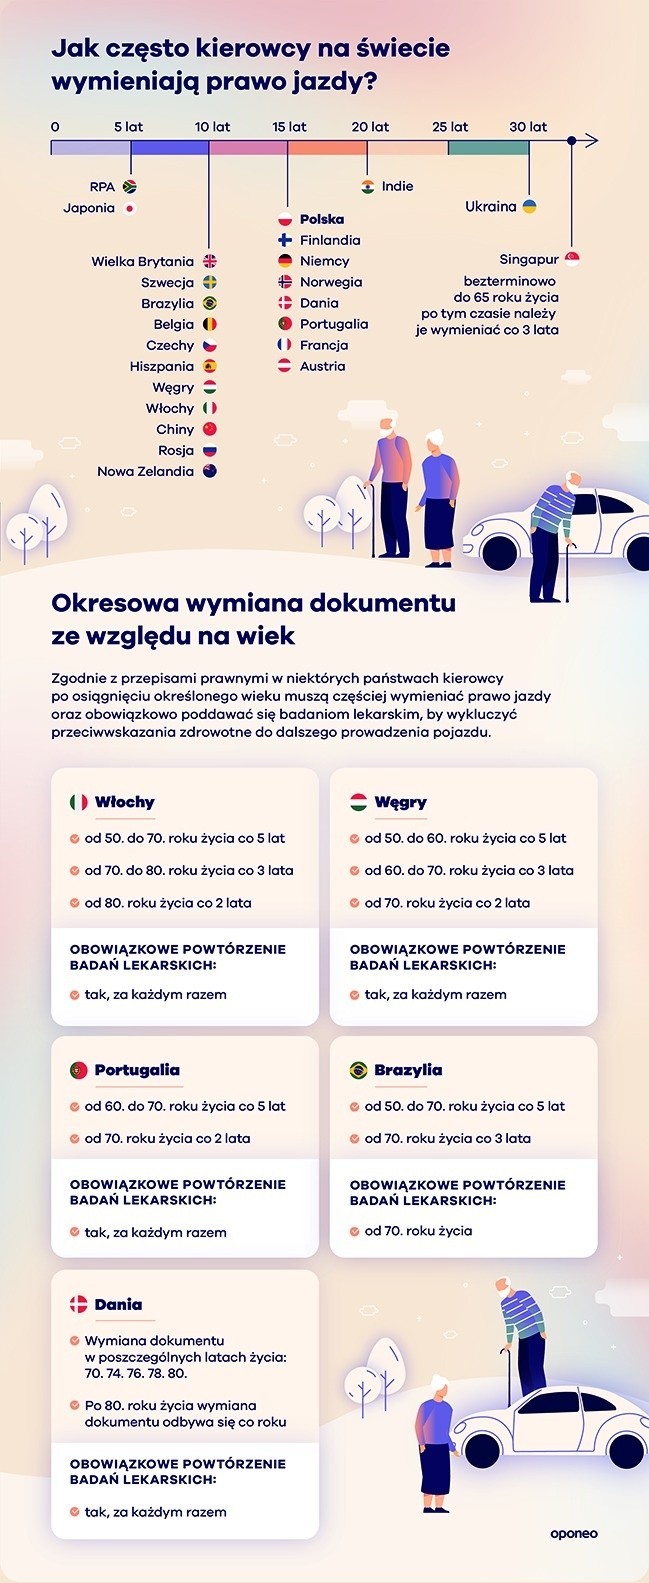 Jak wygląda proces zdobywania prawa jazdy poza Polską?...